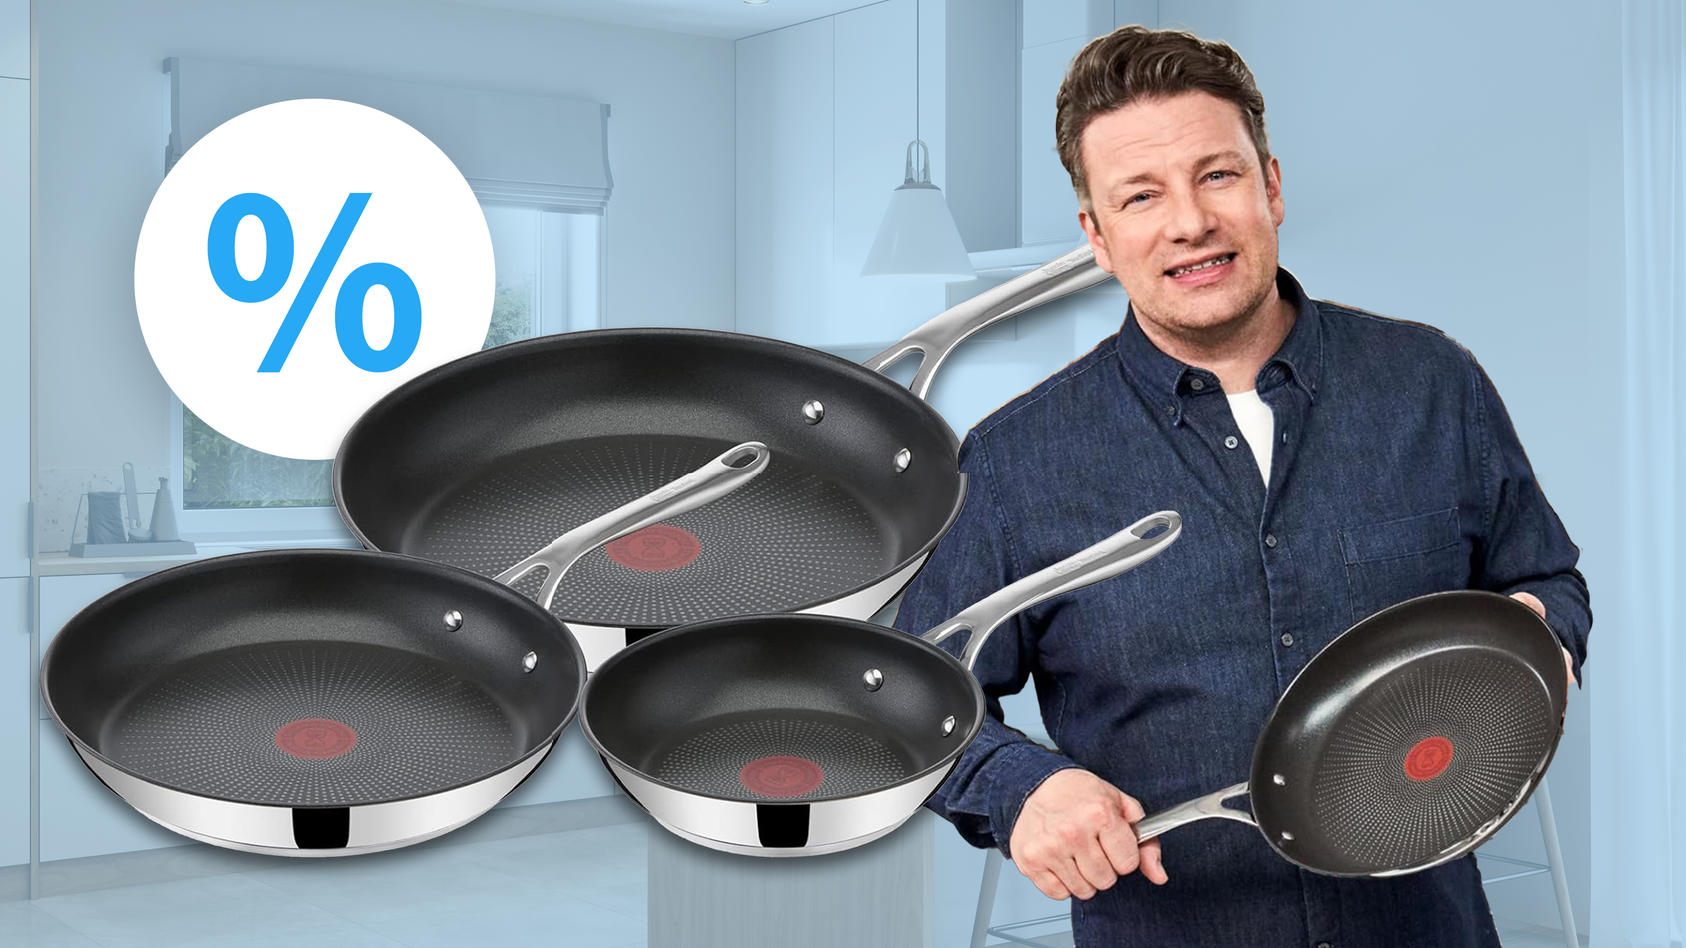 Deal: Jamie-Oliver-Pfannen-Set pfanntastischer Ein